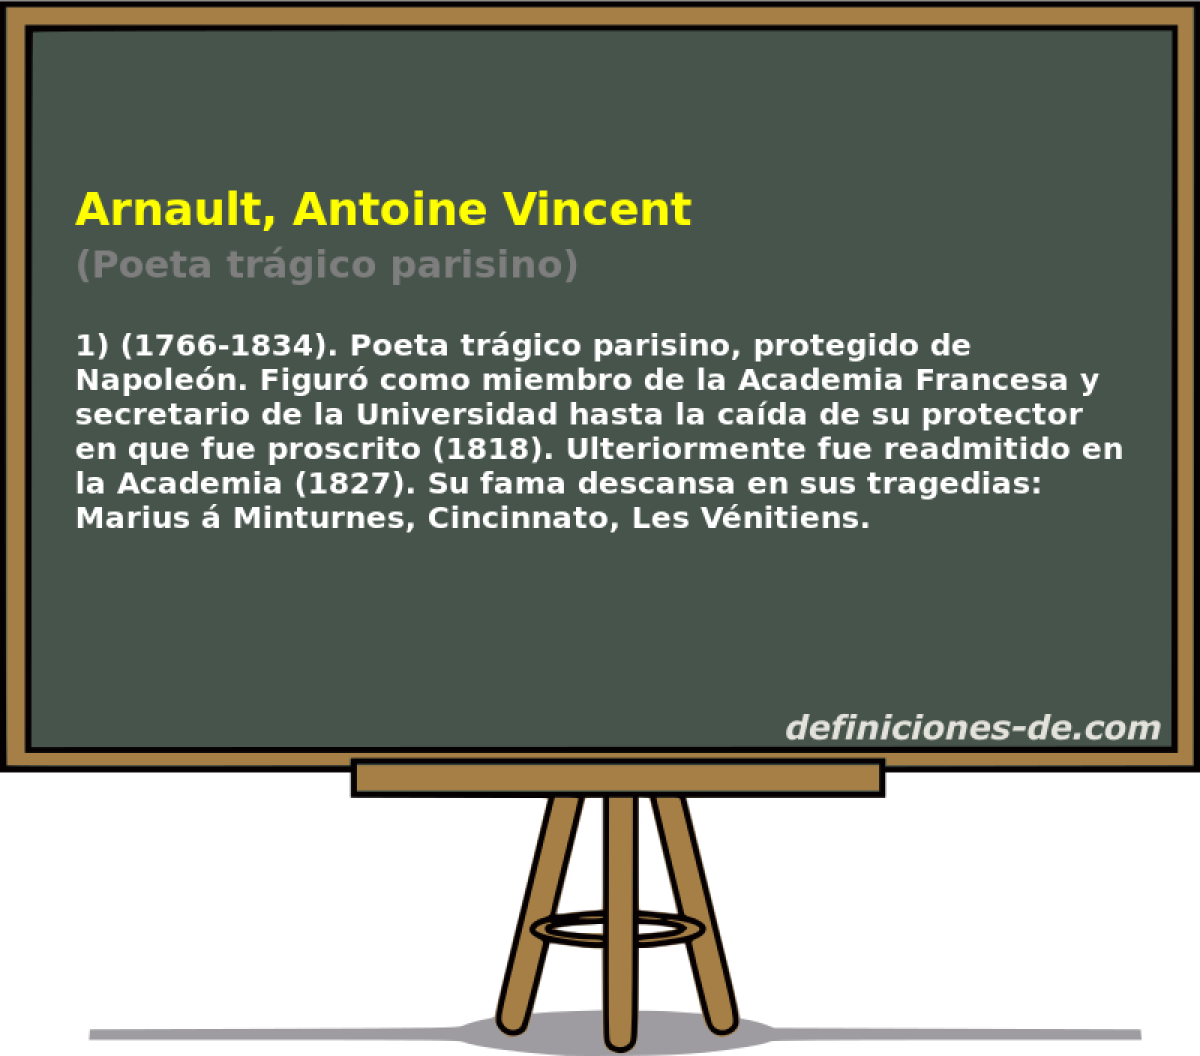 Arnault, Antoine Vincent (Poeta trgico parisino)